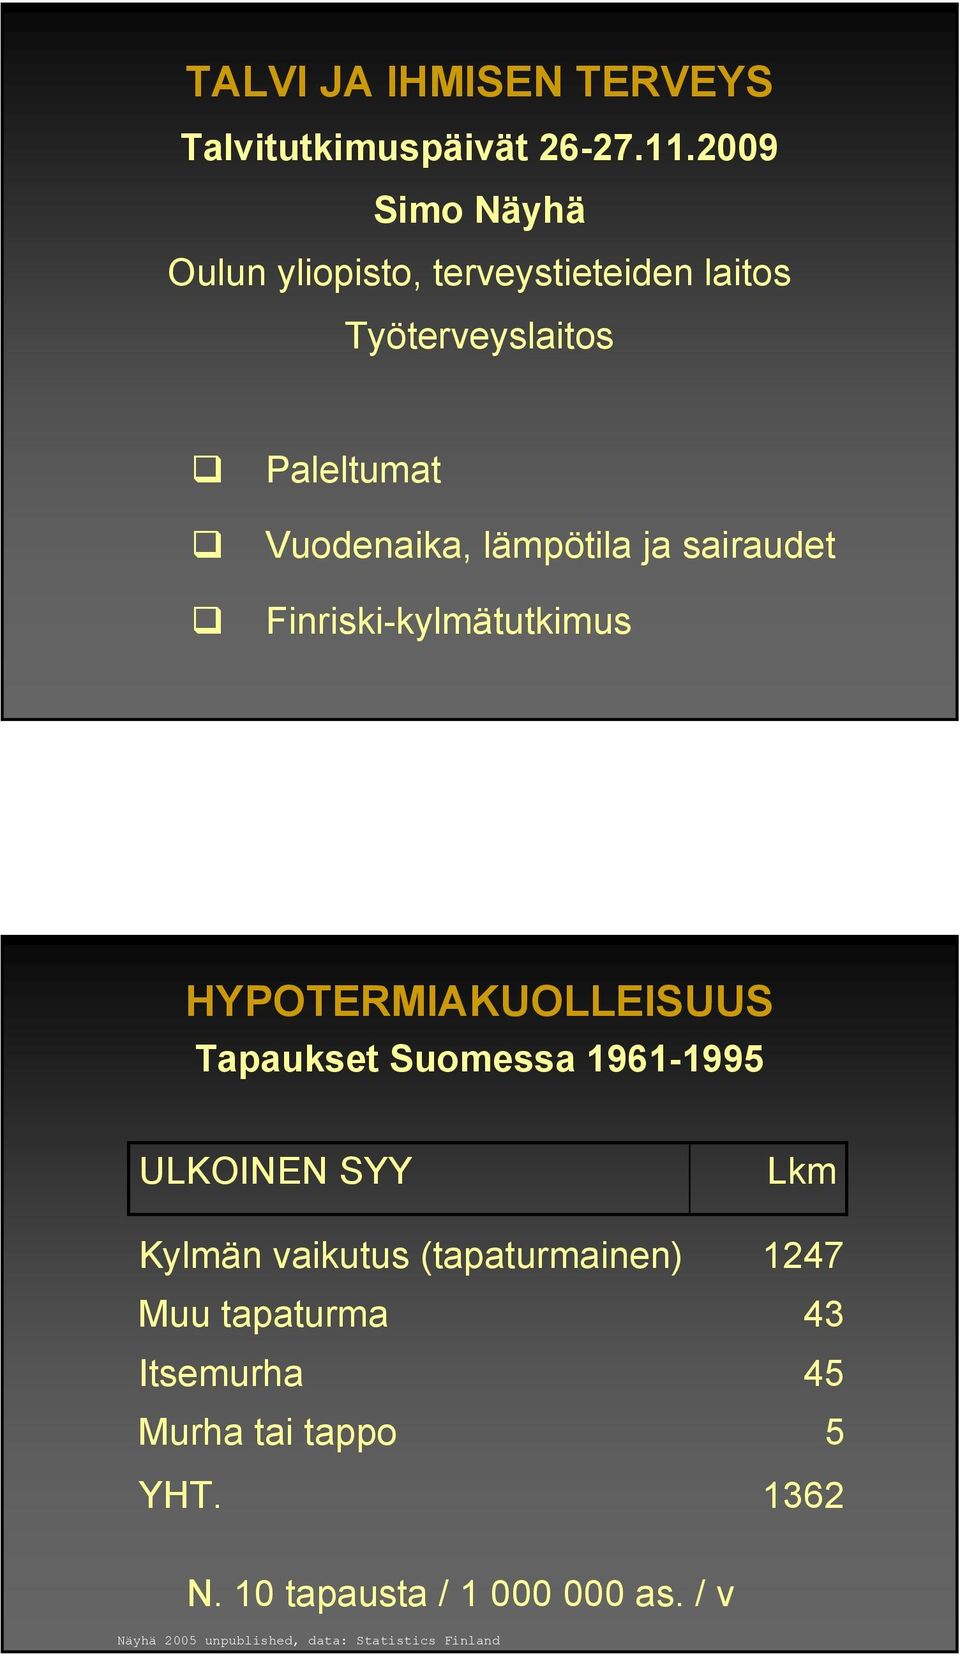 ja sairaudet Finriski-kylmätutkimus HYPOTERMIAKUOLLEISUUS Tapaukset Suomessa 96-995 ULKOINEN SYY Kylmän